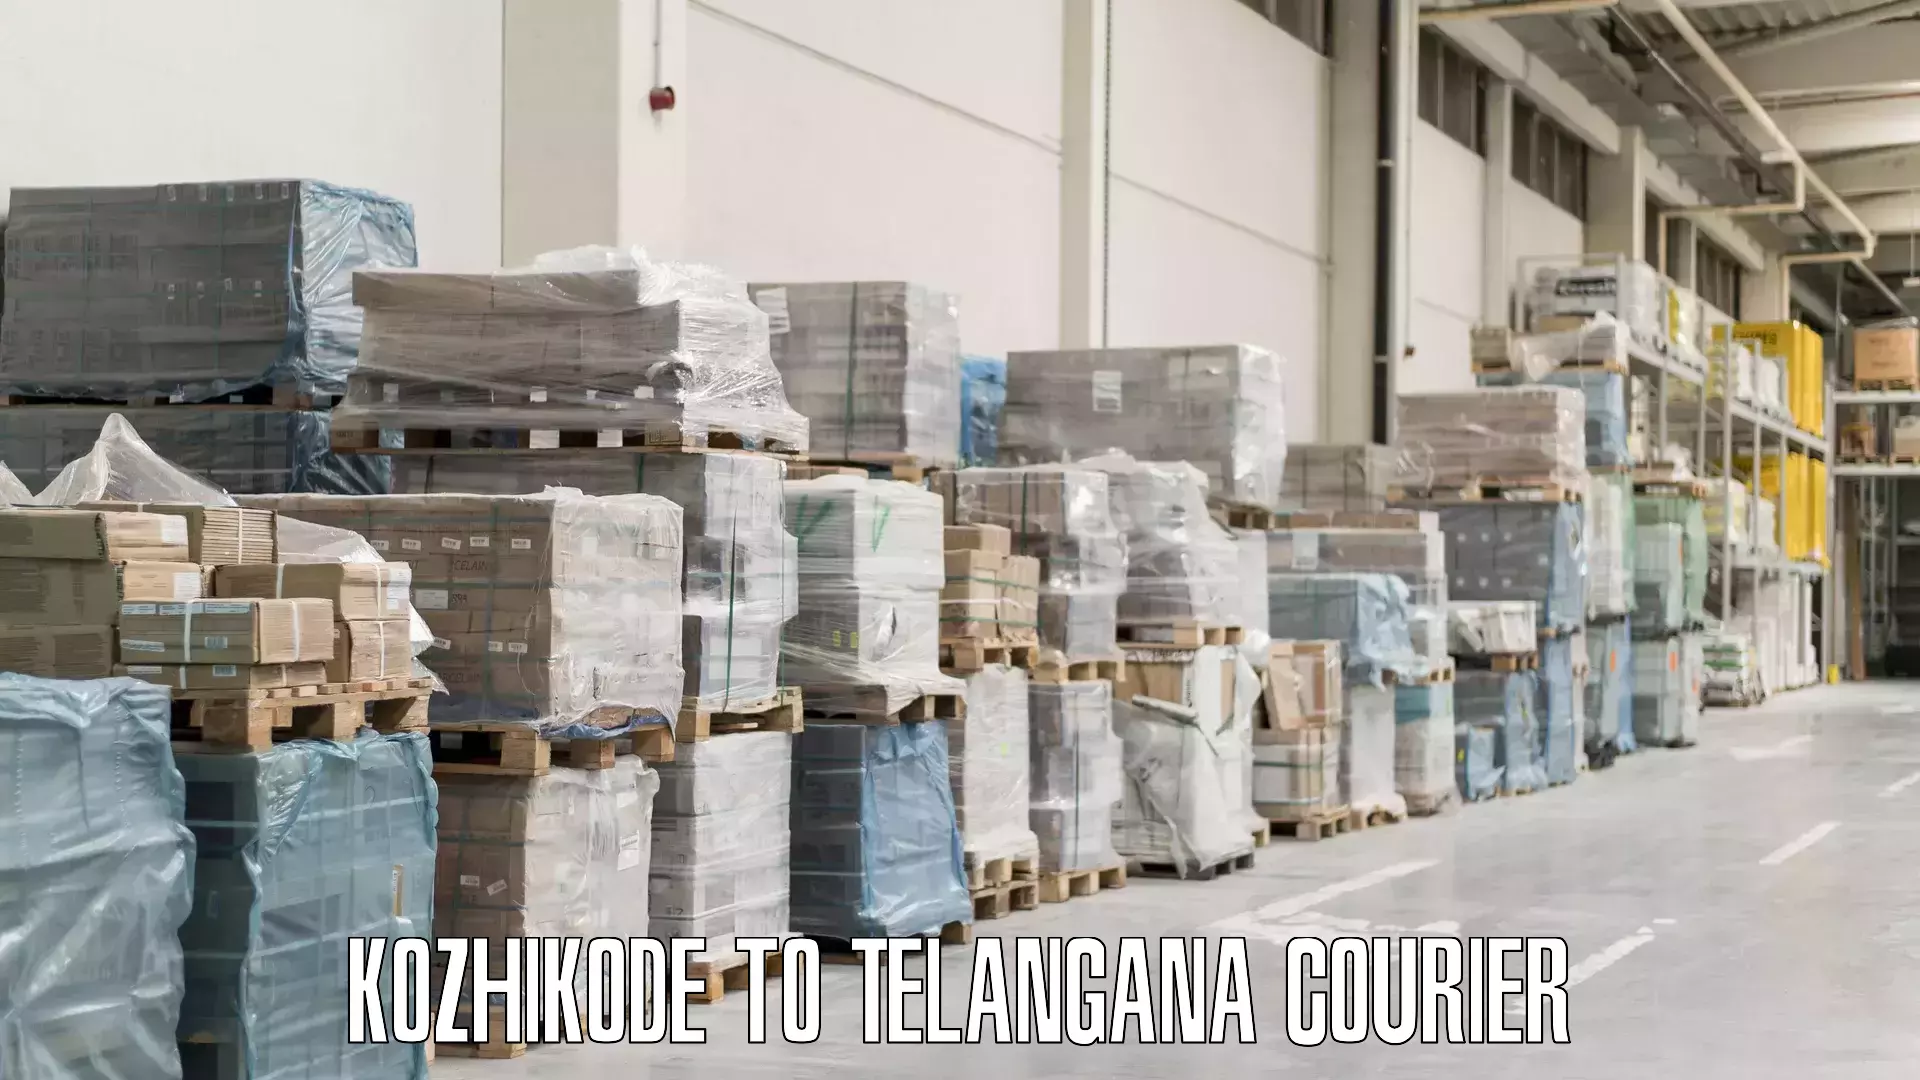 Luggage shipment tracking Kozhikode to Telangana